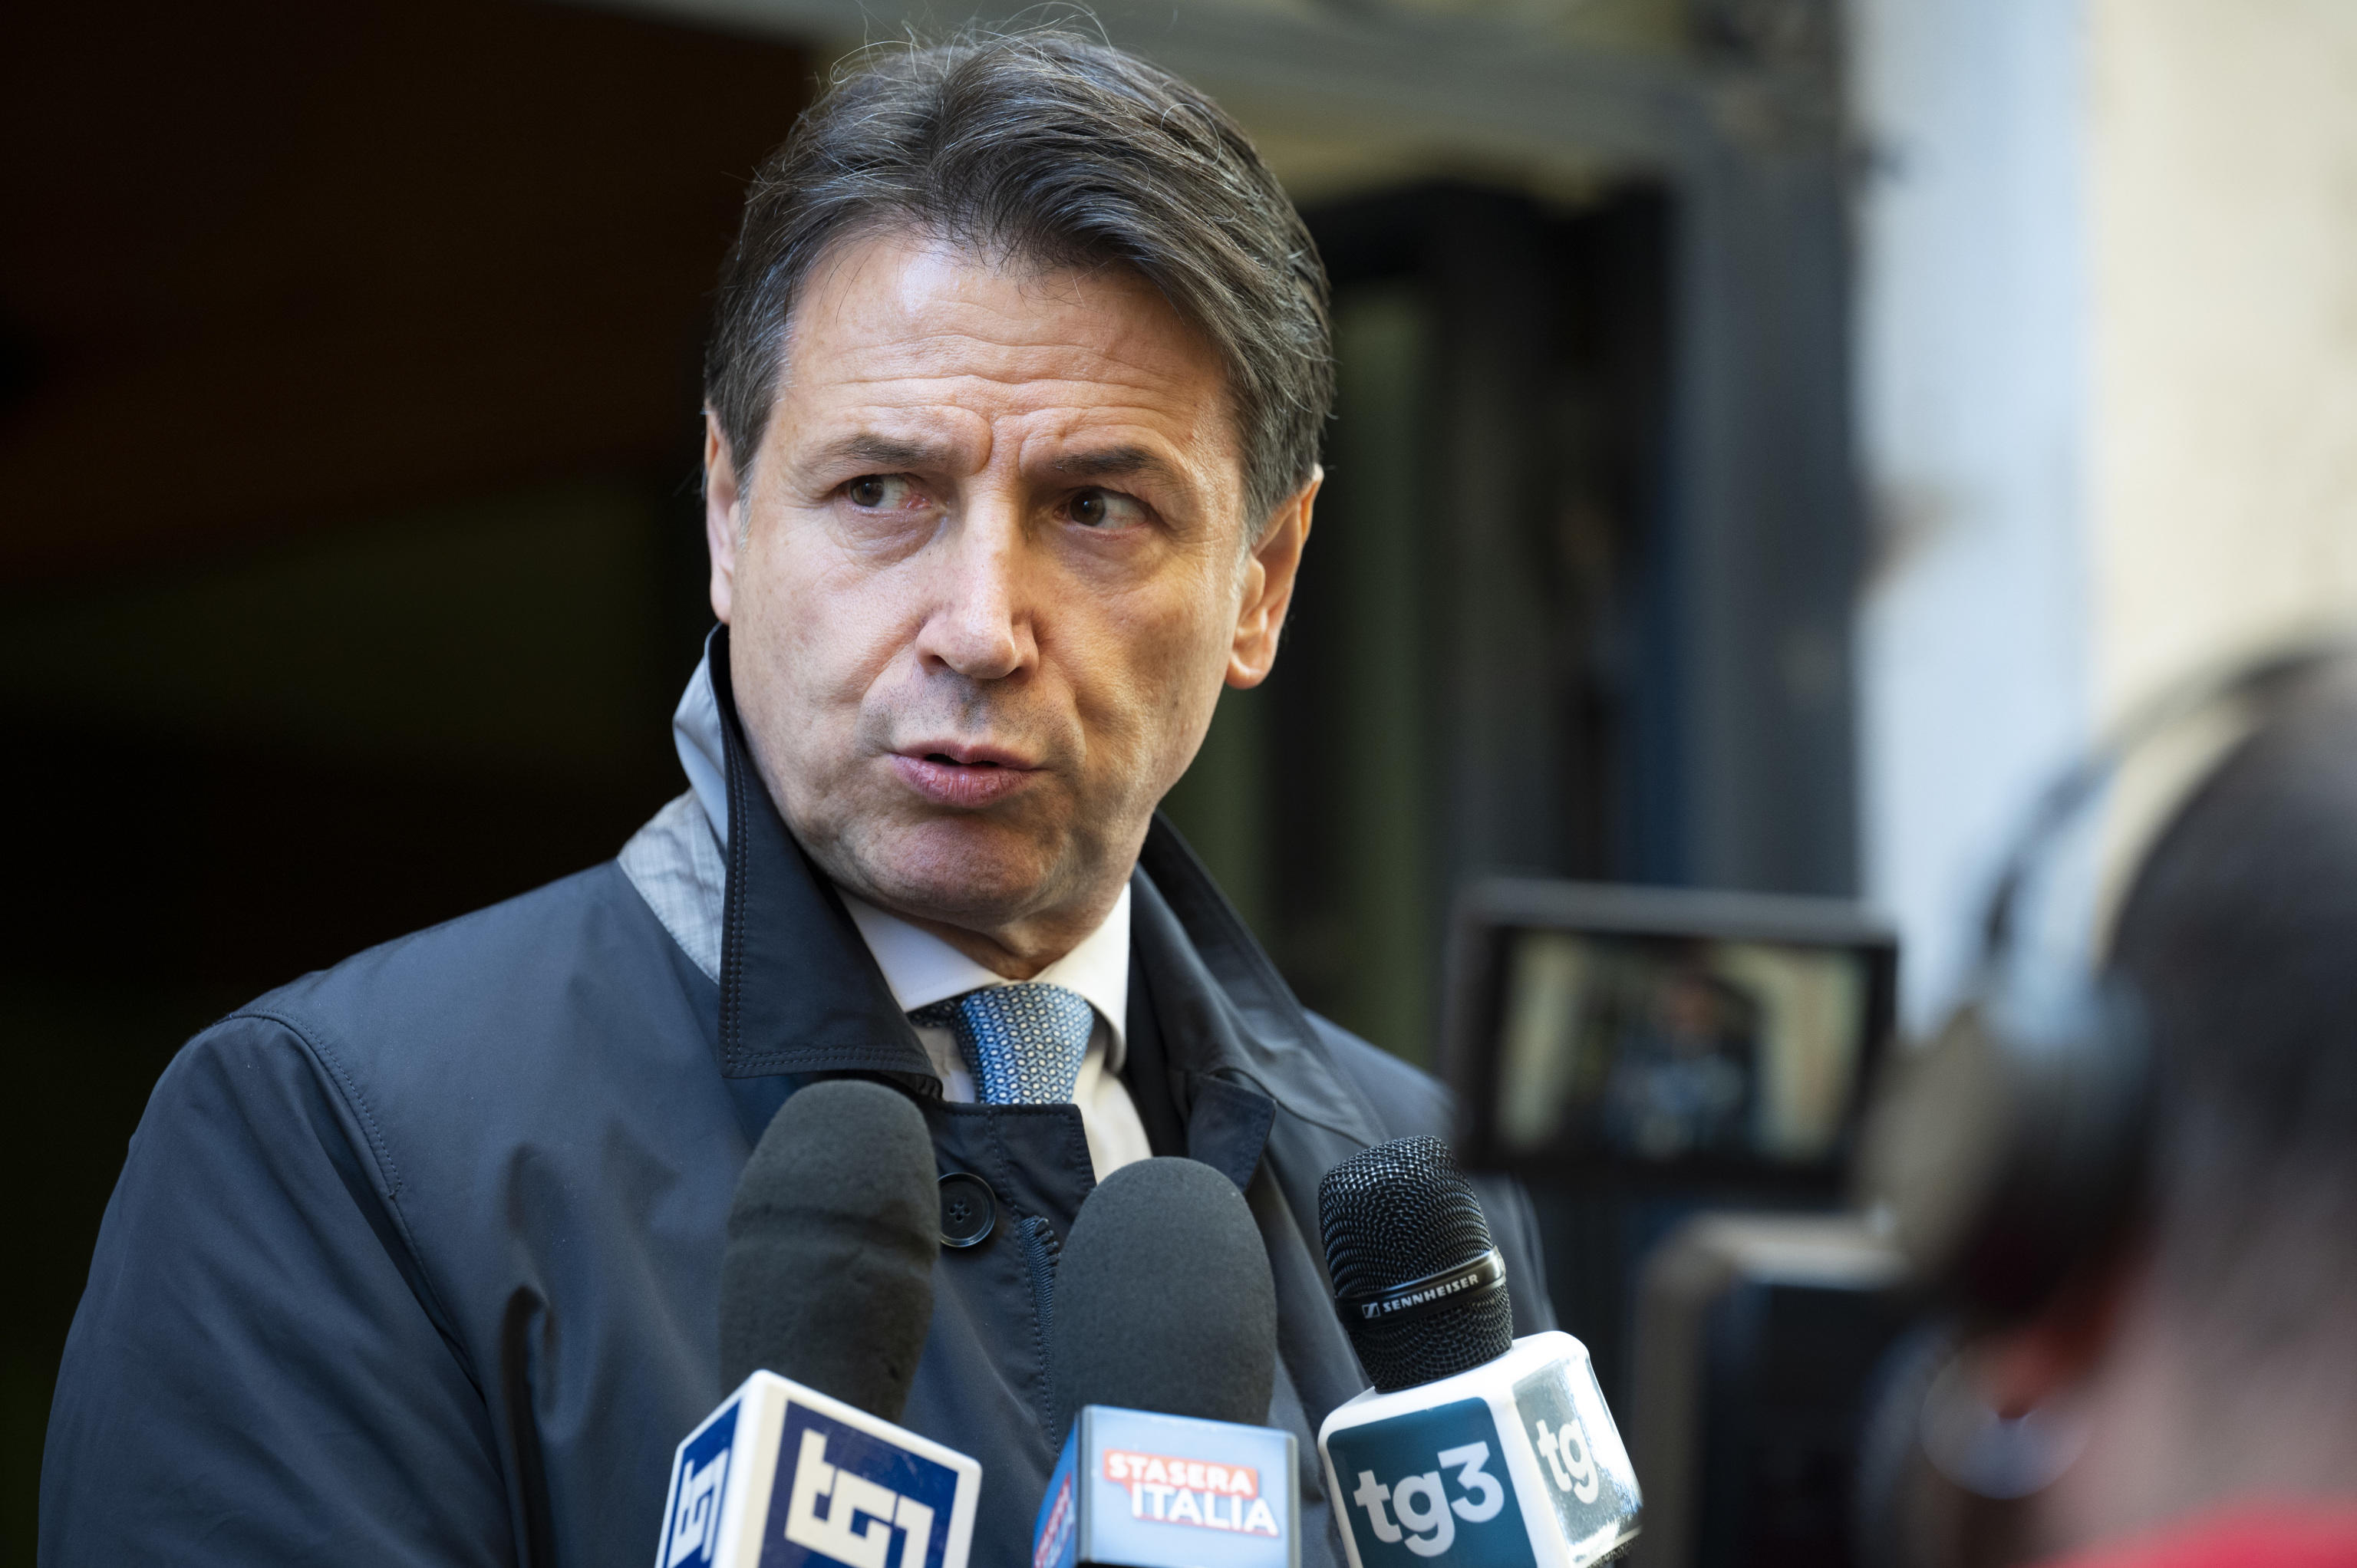 Conte irritato per la nomina di Stefania Craxi, telefonate di fuoco dopo lo “scippo” al M5s: convocati i vertici grillini